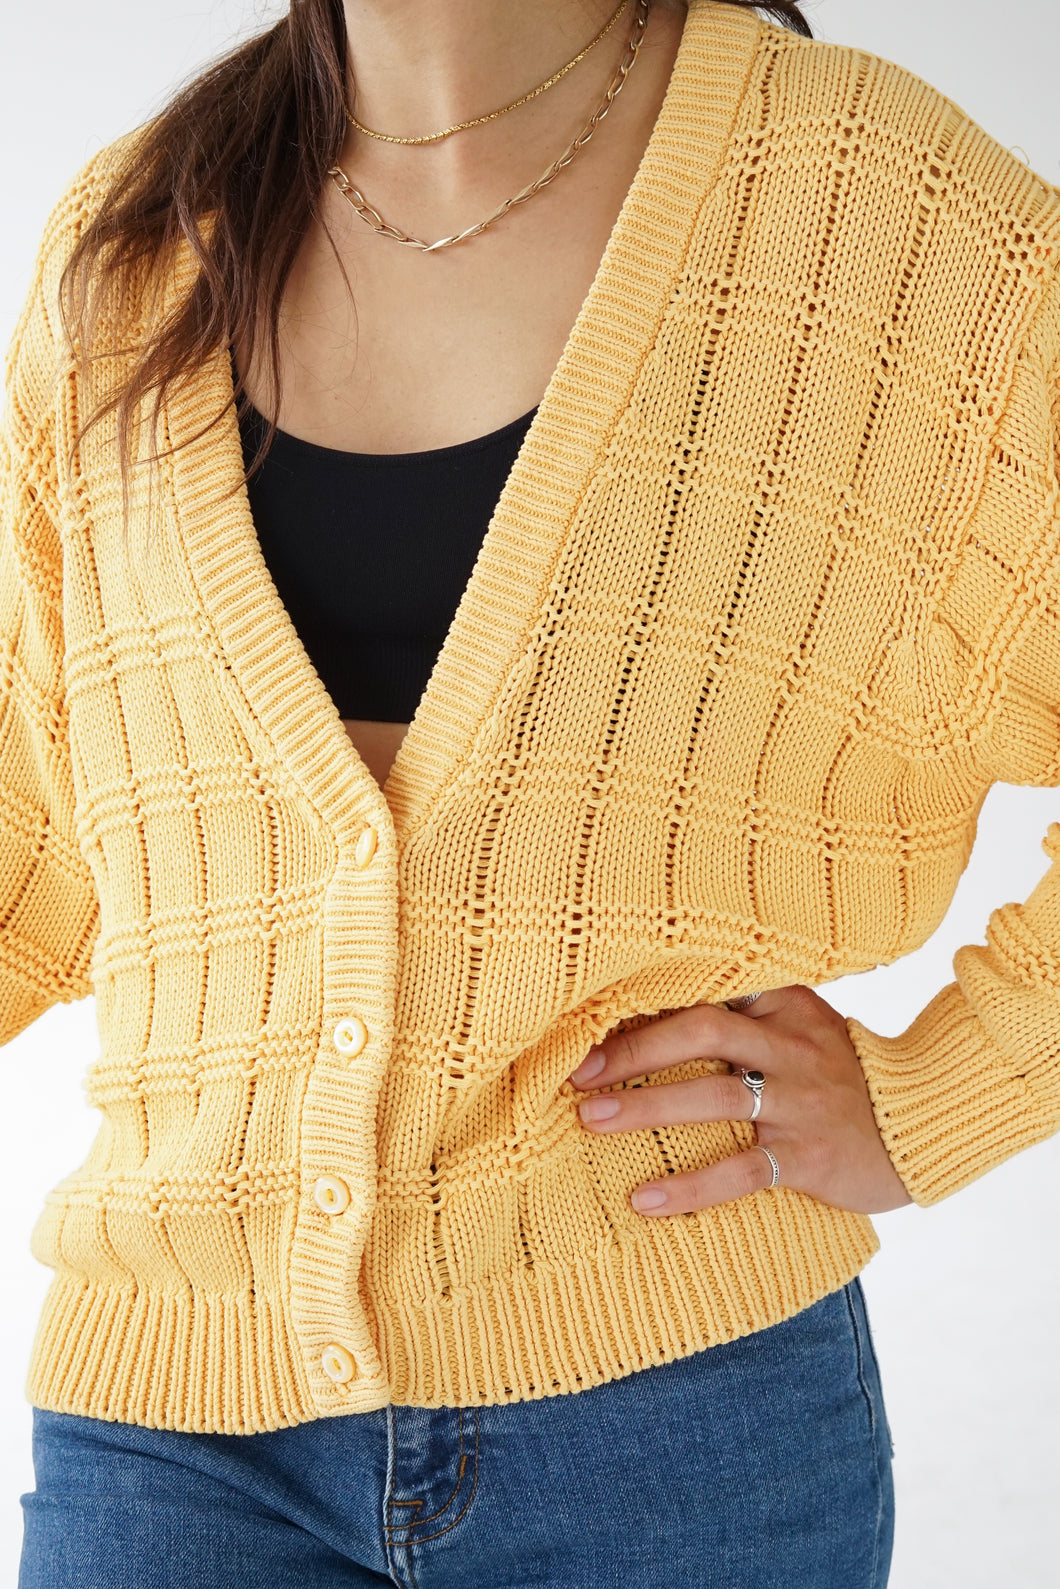 Veste vintage tricot en coton à boutons jaune Thalie pour femme taille M